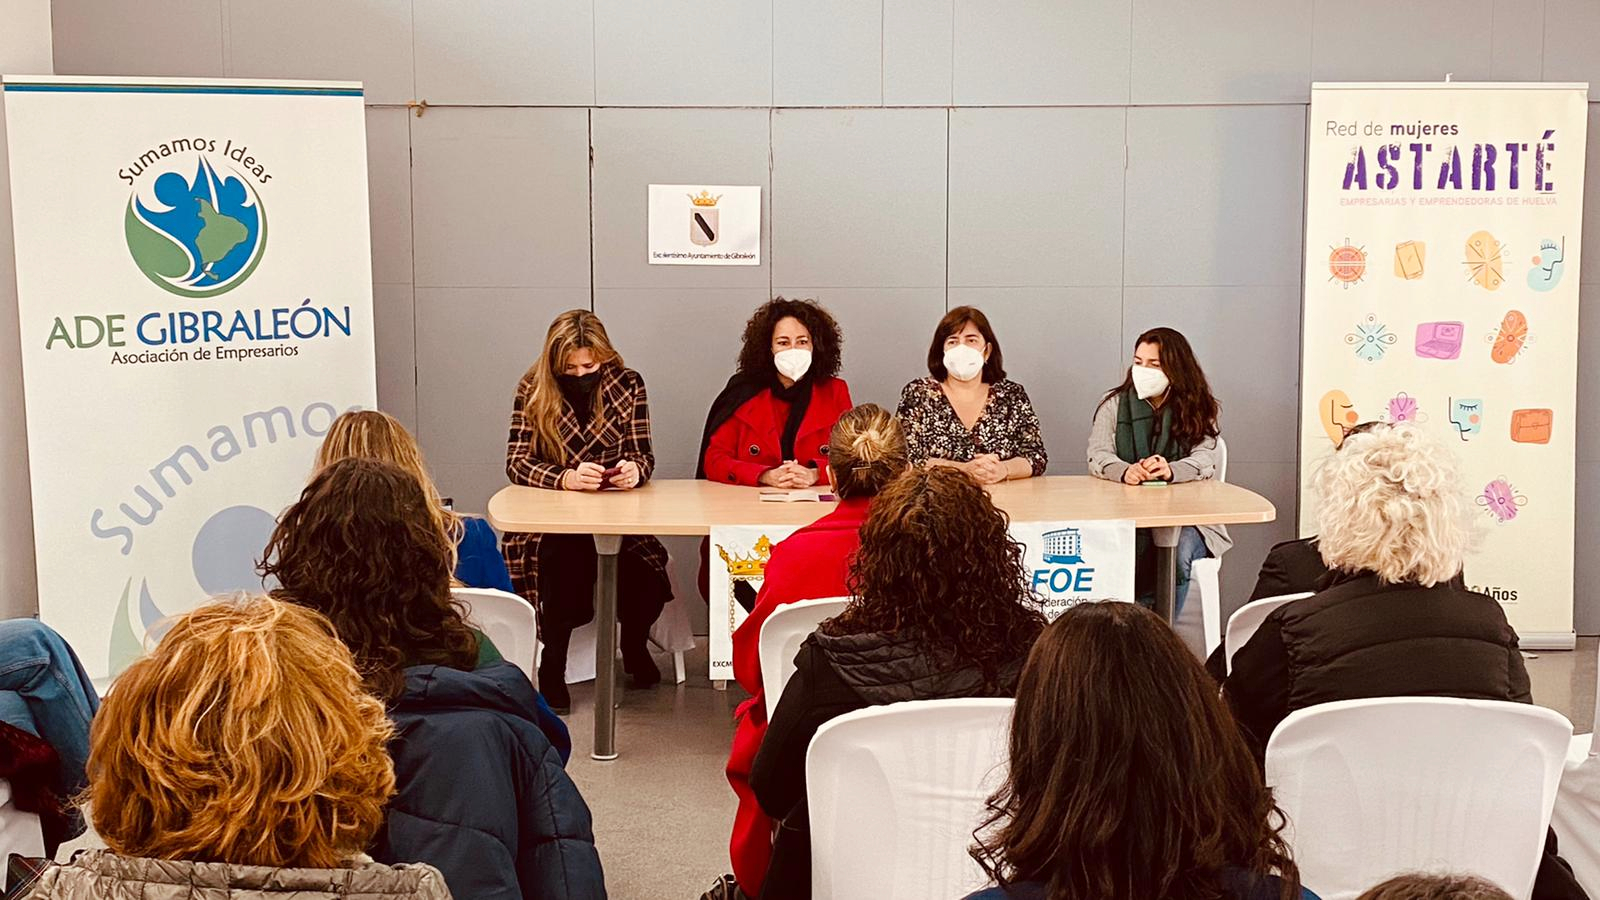 La Red de Mujeres Astarté celebra su primera reunión en Gibraleón